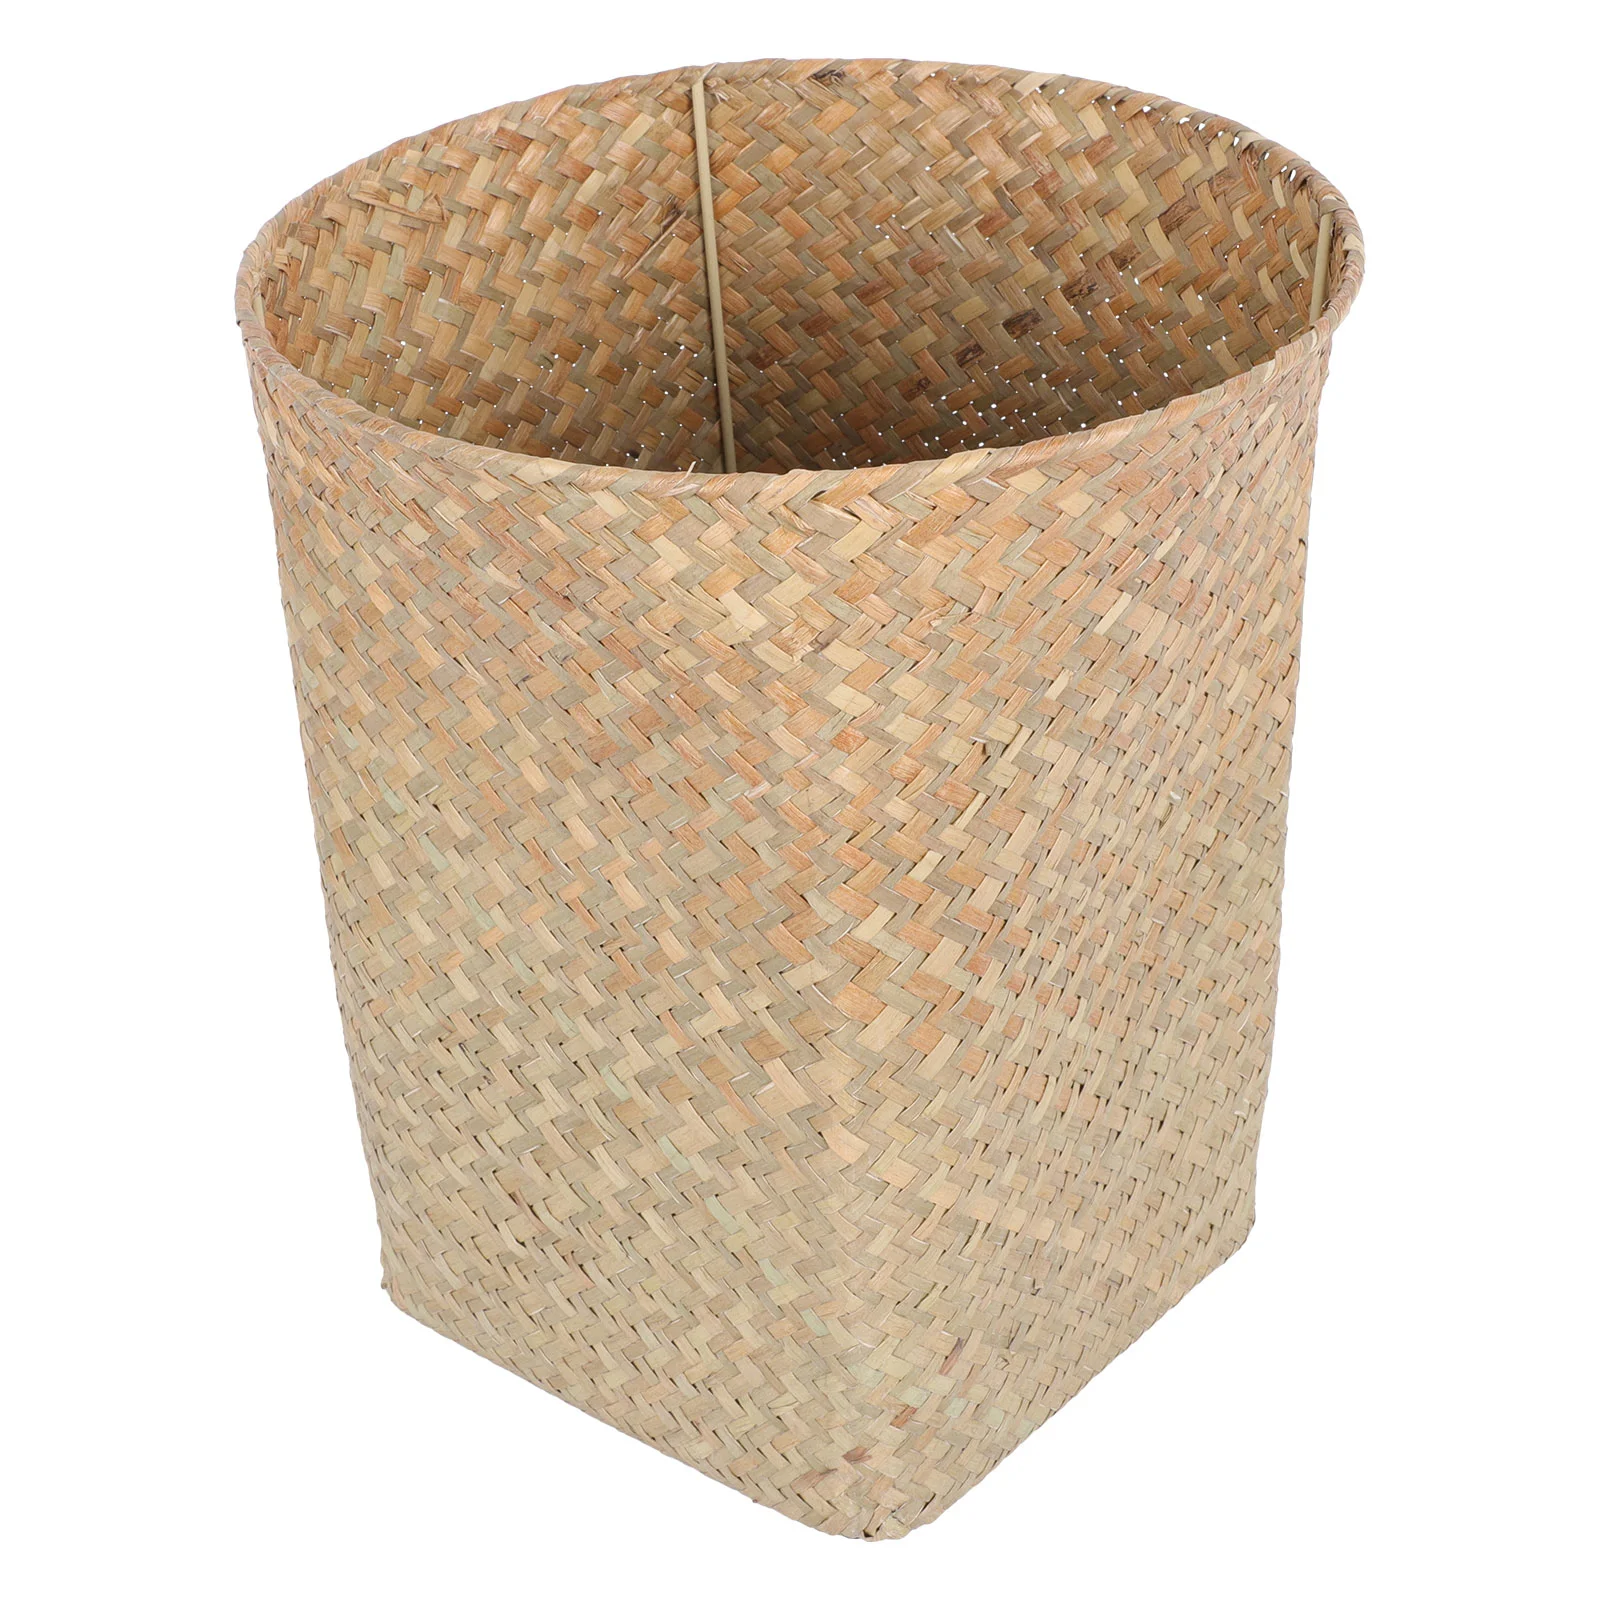 

Basket Trash Can Waste Woven Storage Bin Rattan Wicker Garbage Rubbish Seagrass Straw Wastebasket Container Baskets Paper